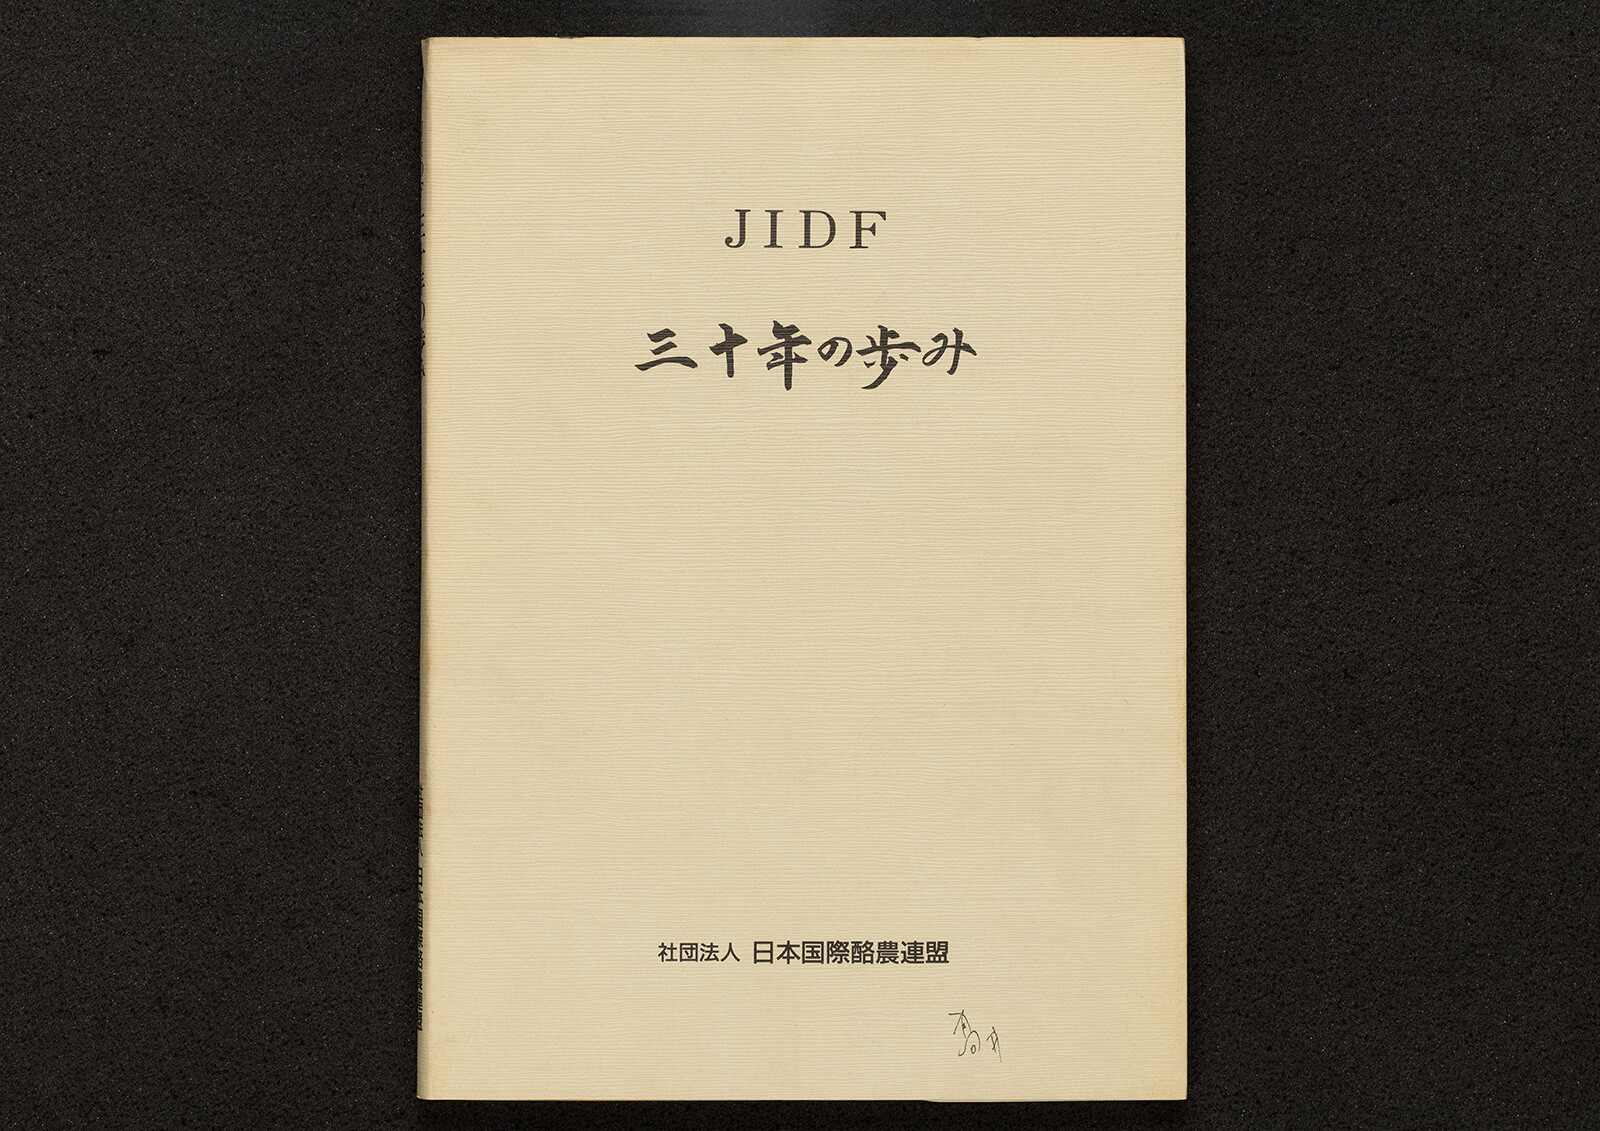 JIDF 三十年の歩み｜書籍・論文・その他刊行物｜一般社団法人 Jミルク 